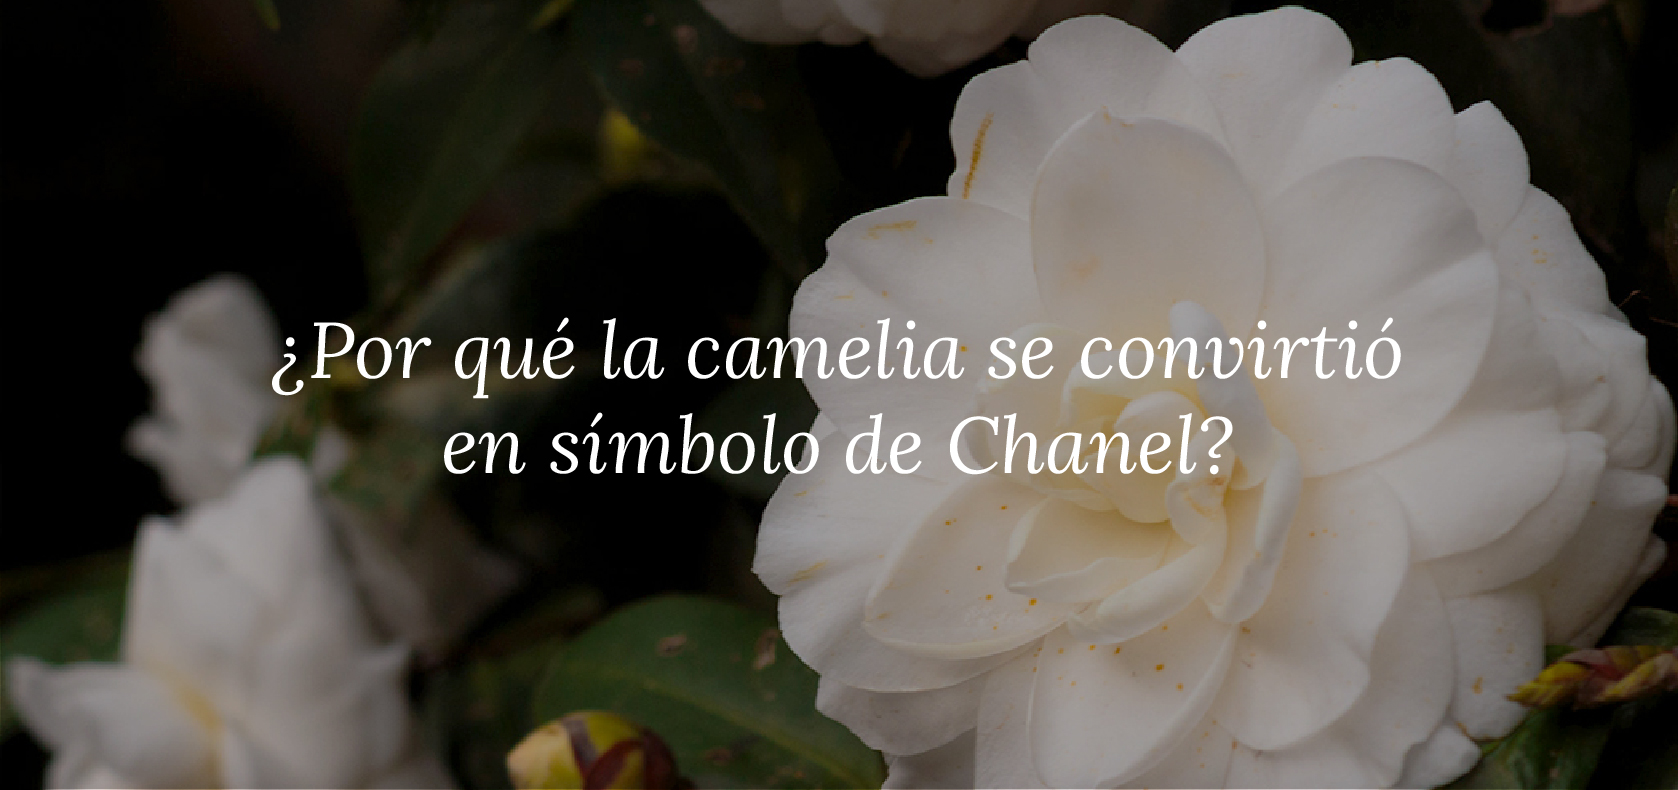 Por qué la camelia se convirtió en símbolo de Chanel? - CecileMag